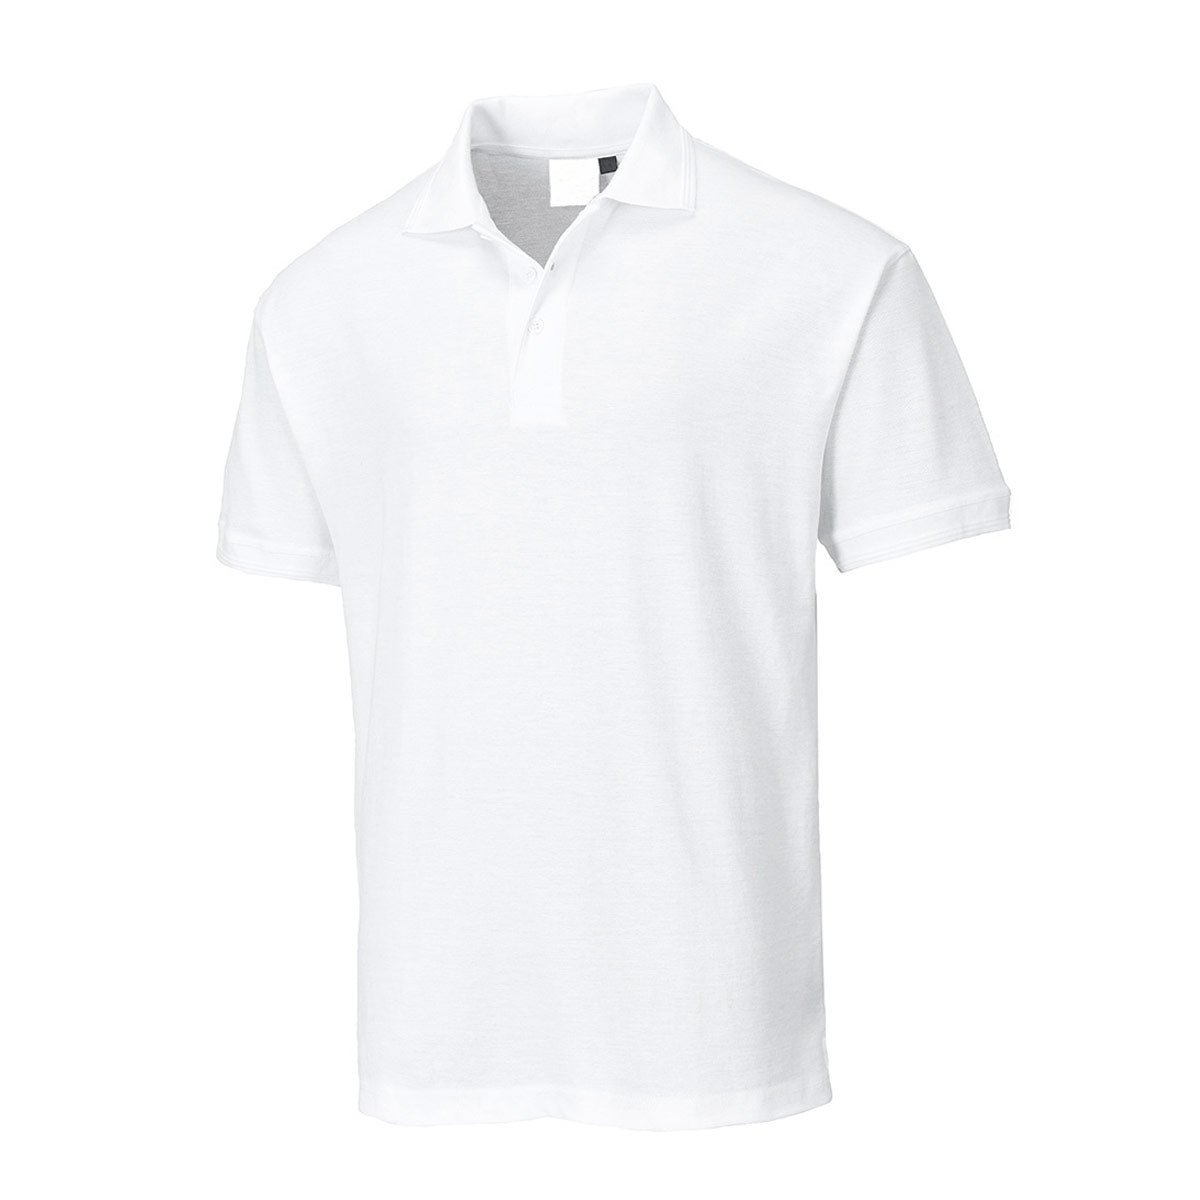 Poloshirt til mænd - Hvid - Størrelse: 3XL